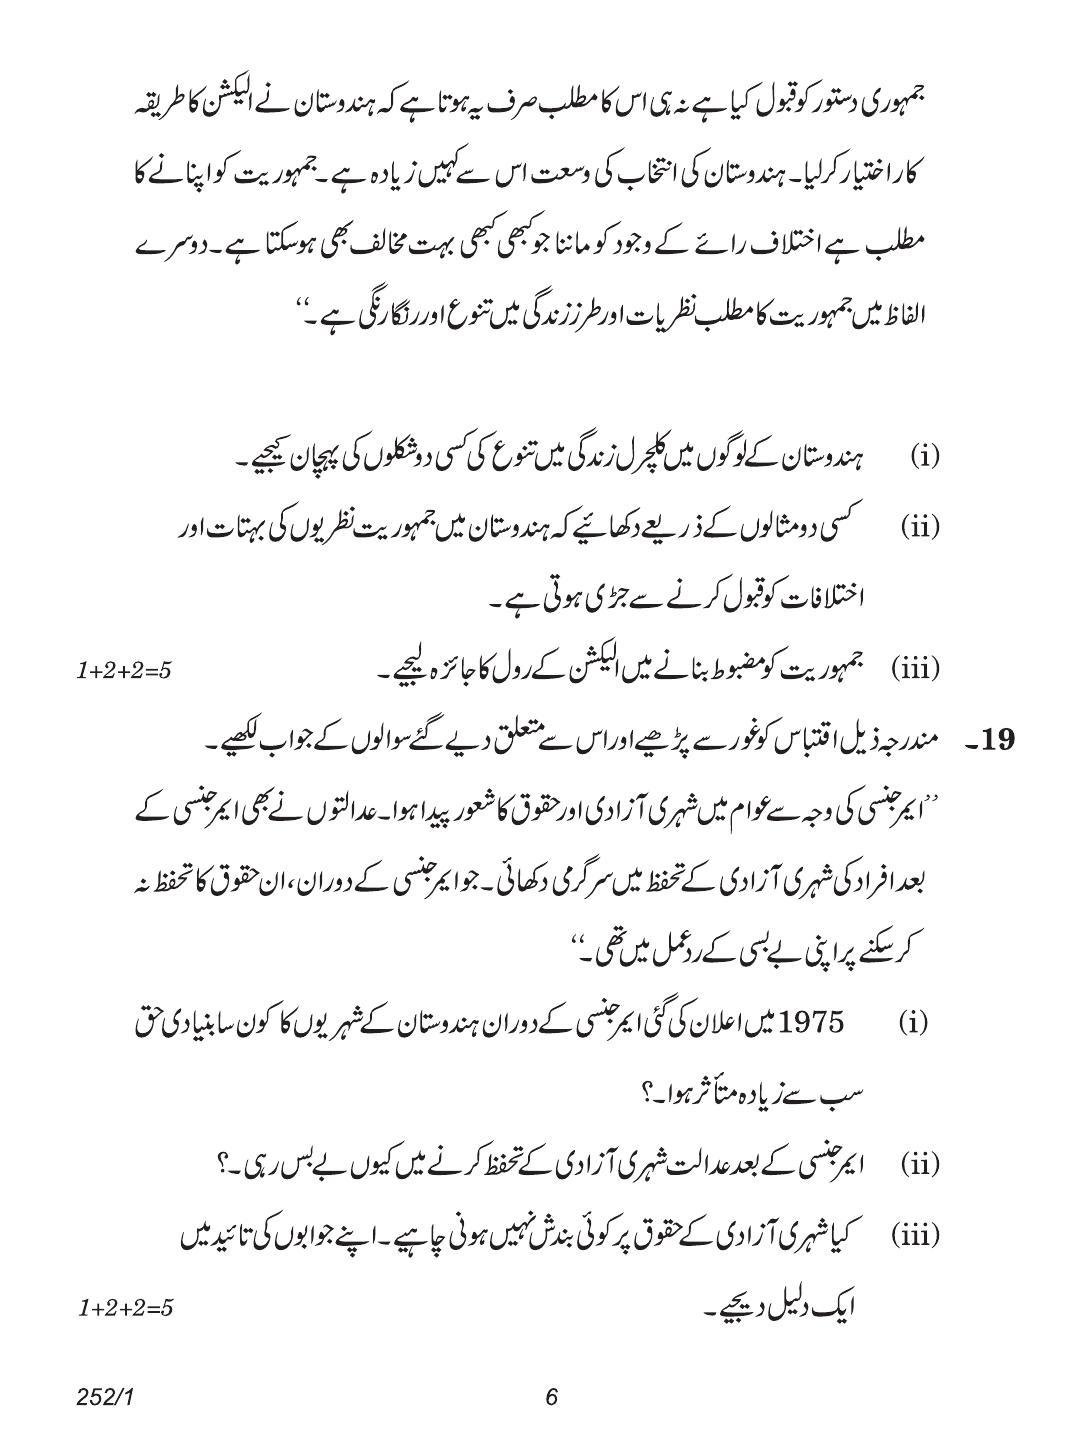 CBSE Class 12 252-1 (Political Science Urdu) 2018 Question Paper - Page 6